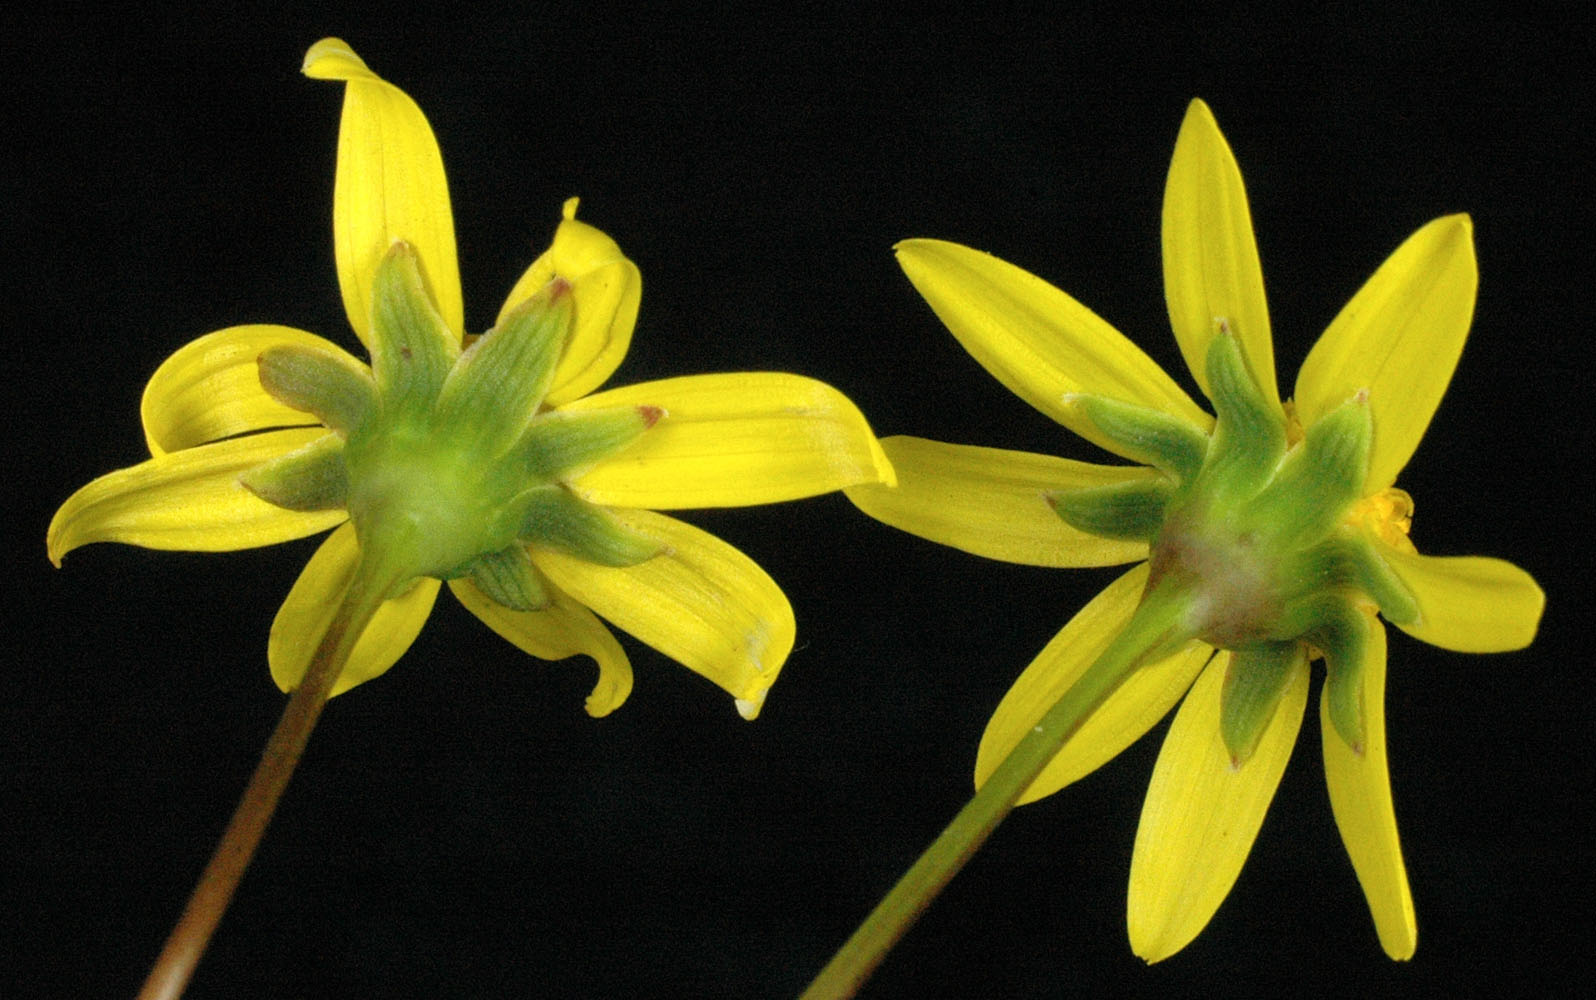 Flora of Eastern Washington Image: Crocidium multicaule